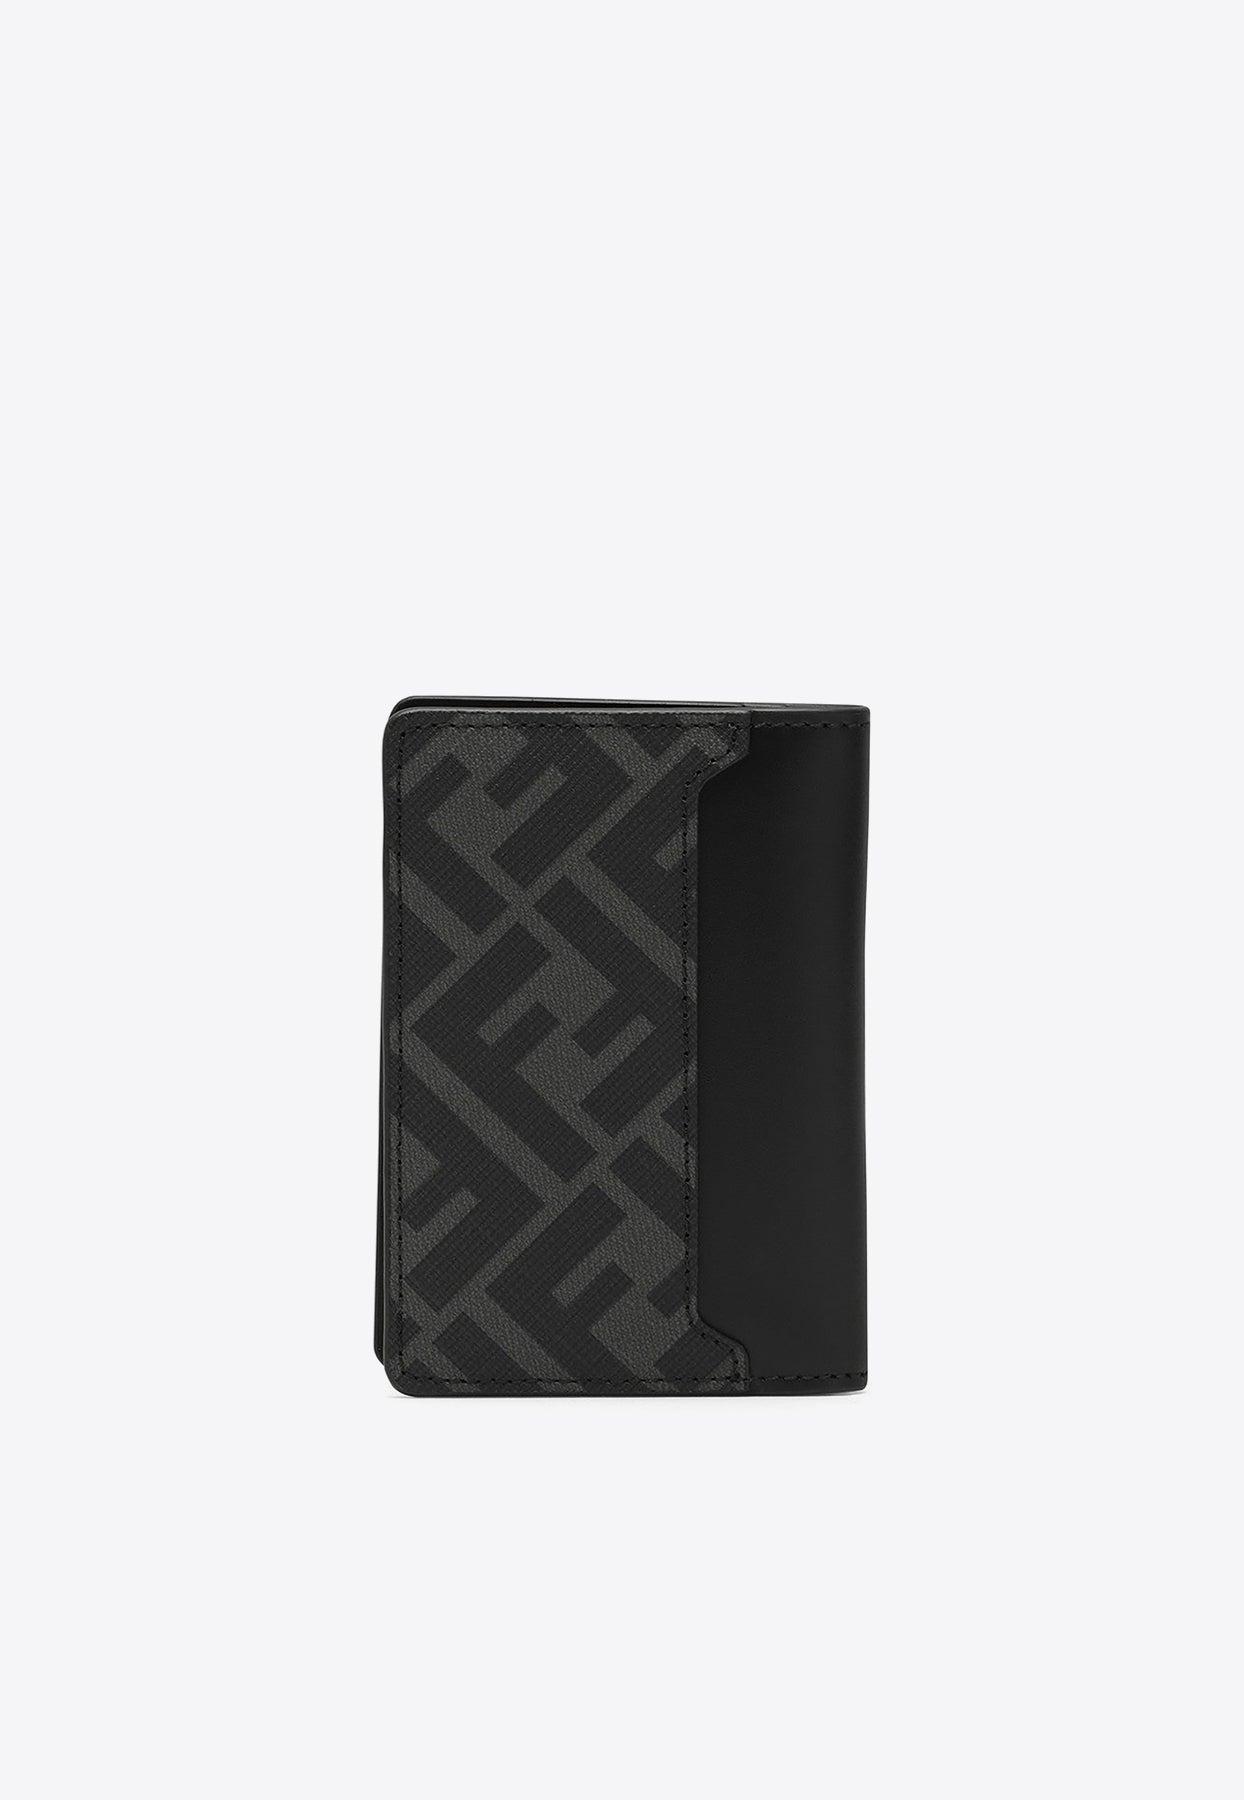 FF Card Holder - Black leather card holder